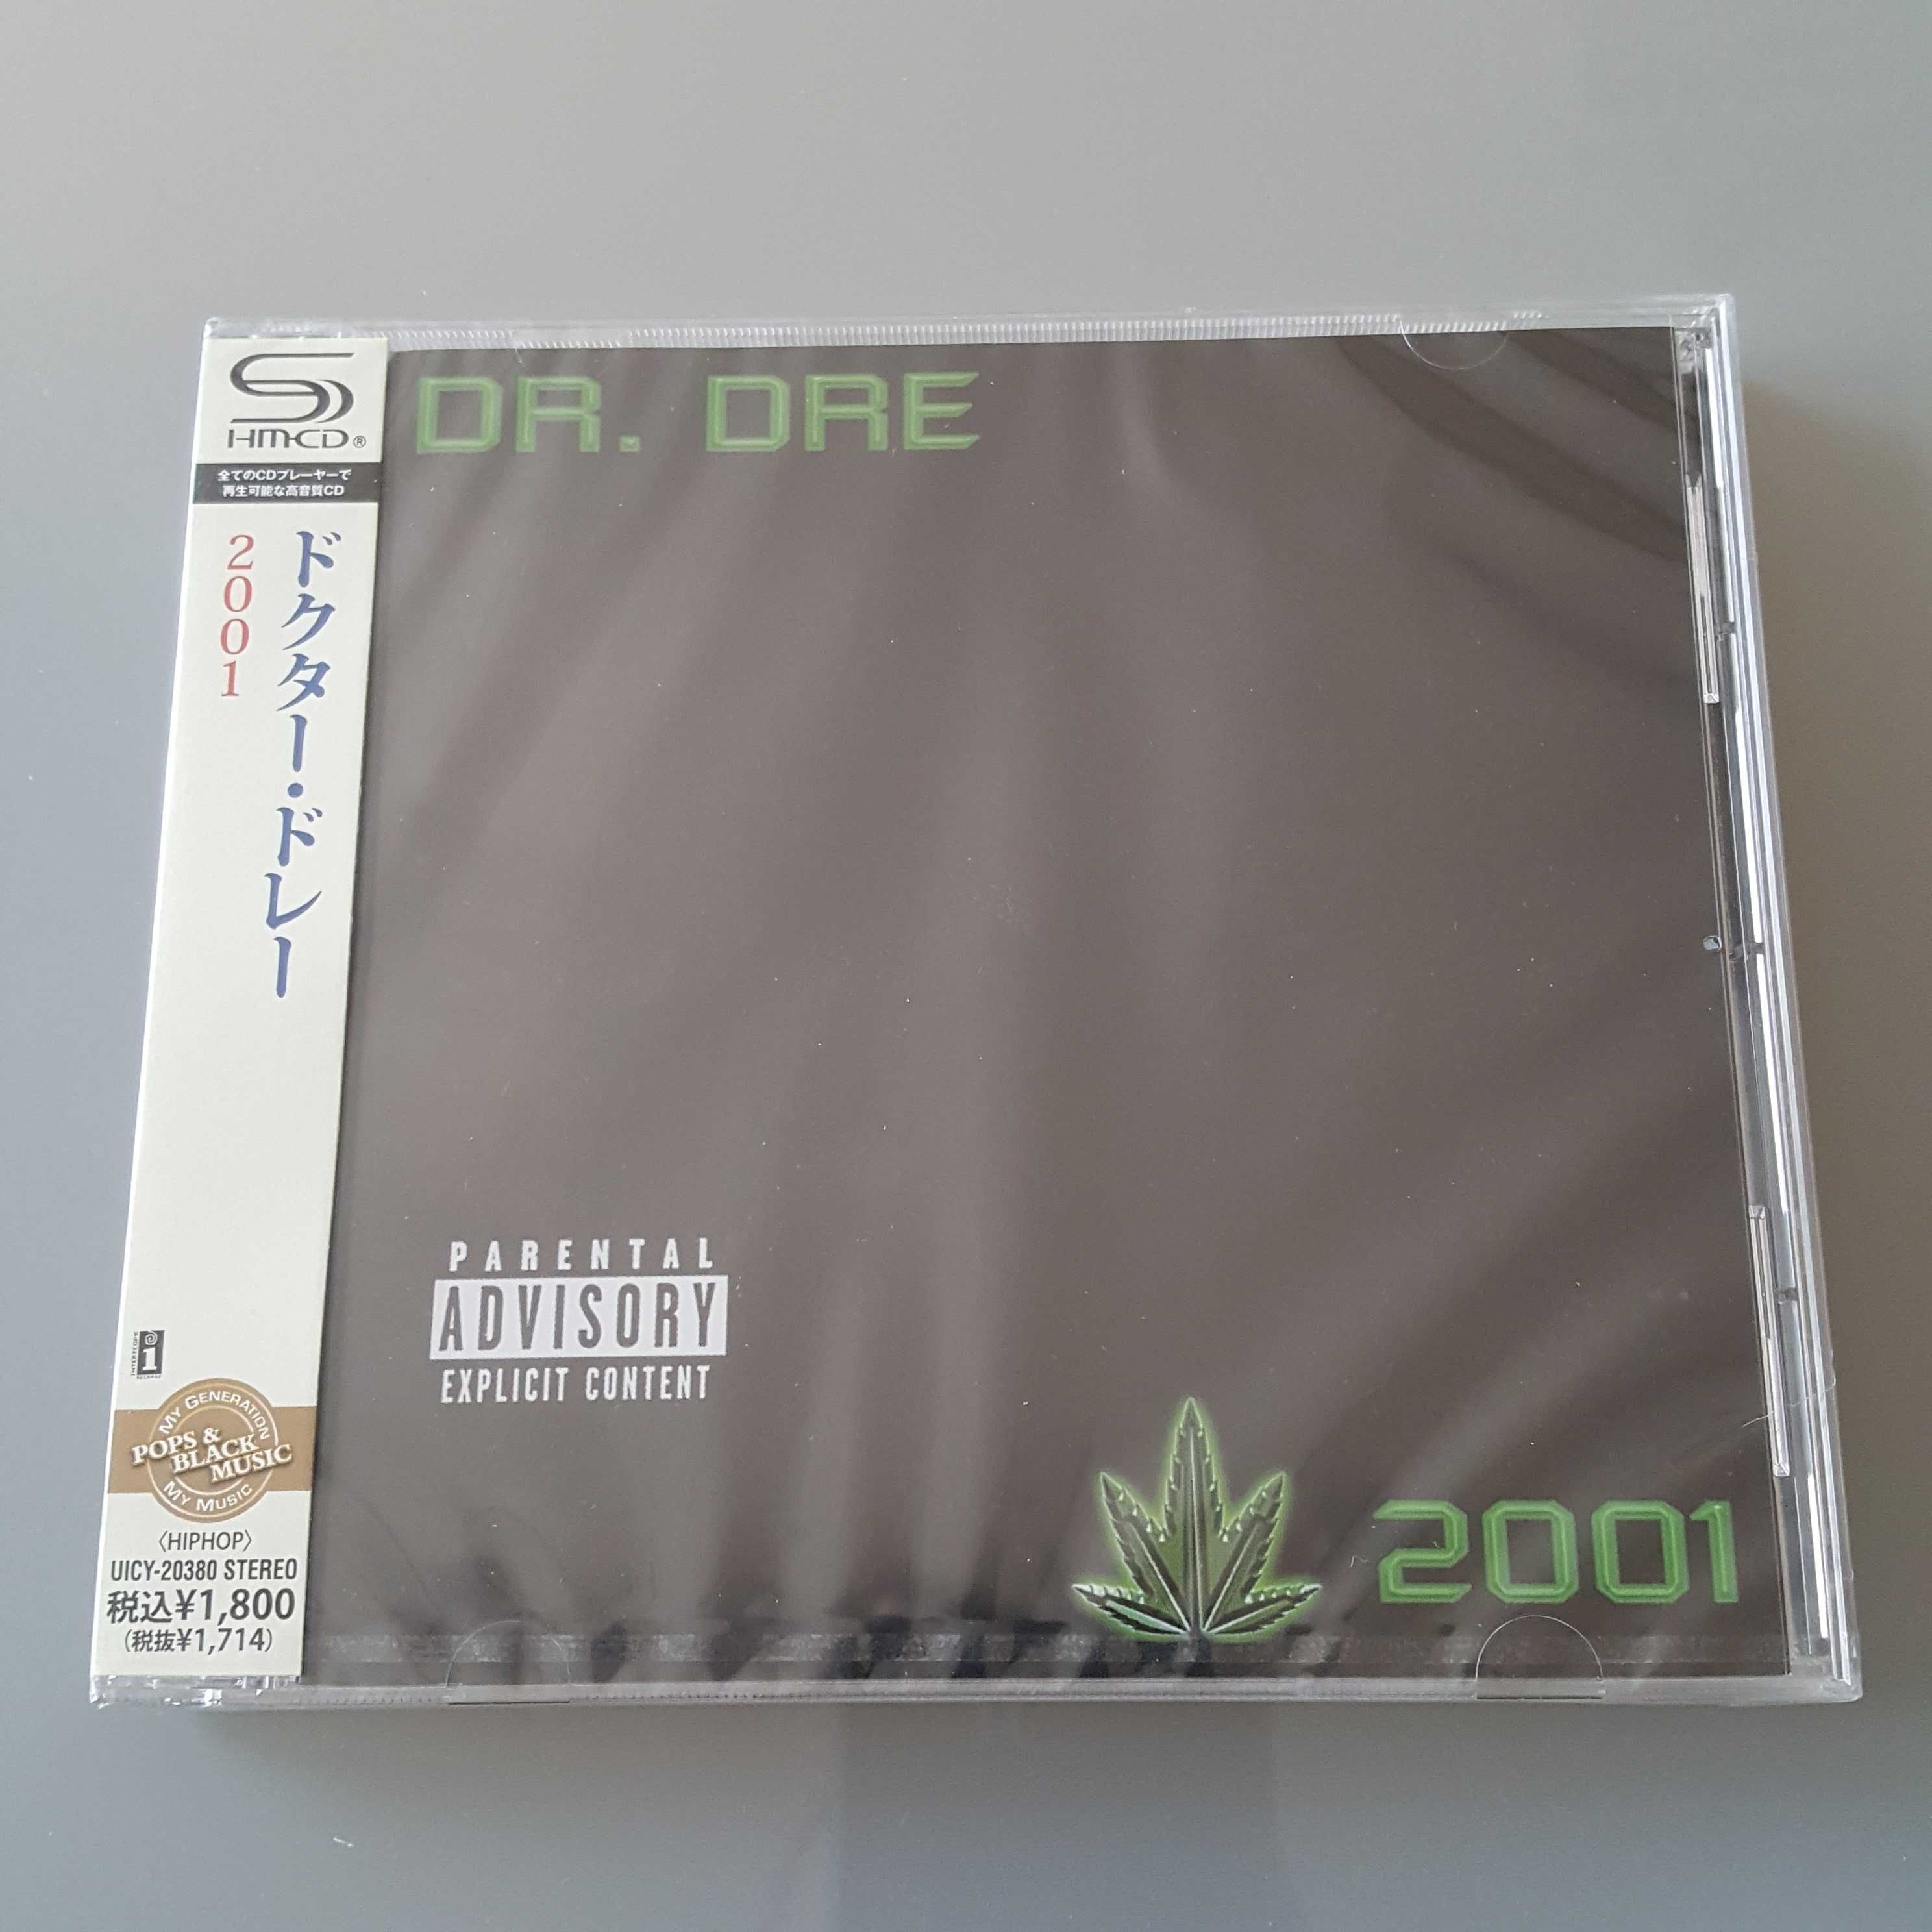 Dr Dre - 2001 SHM-CD Japan